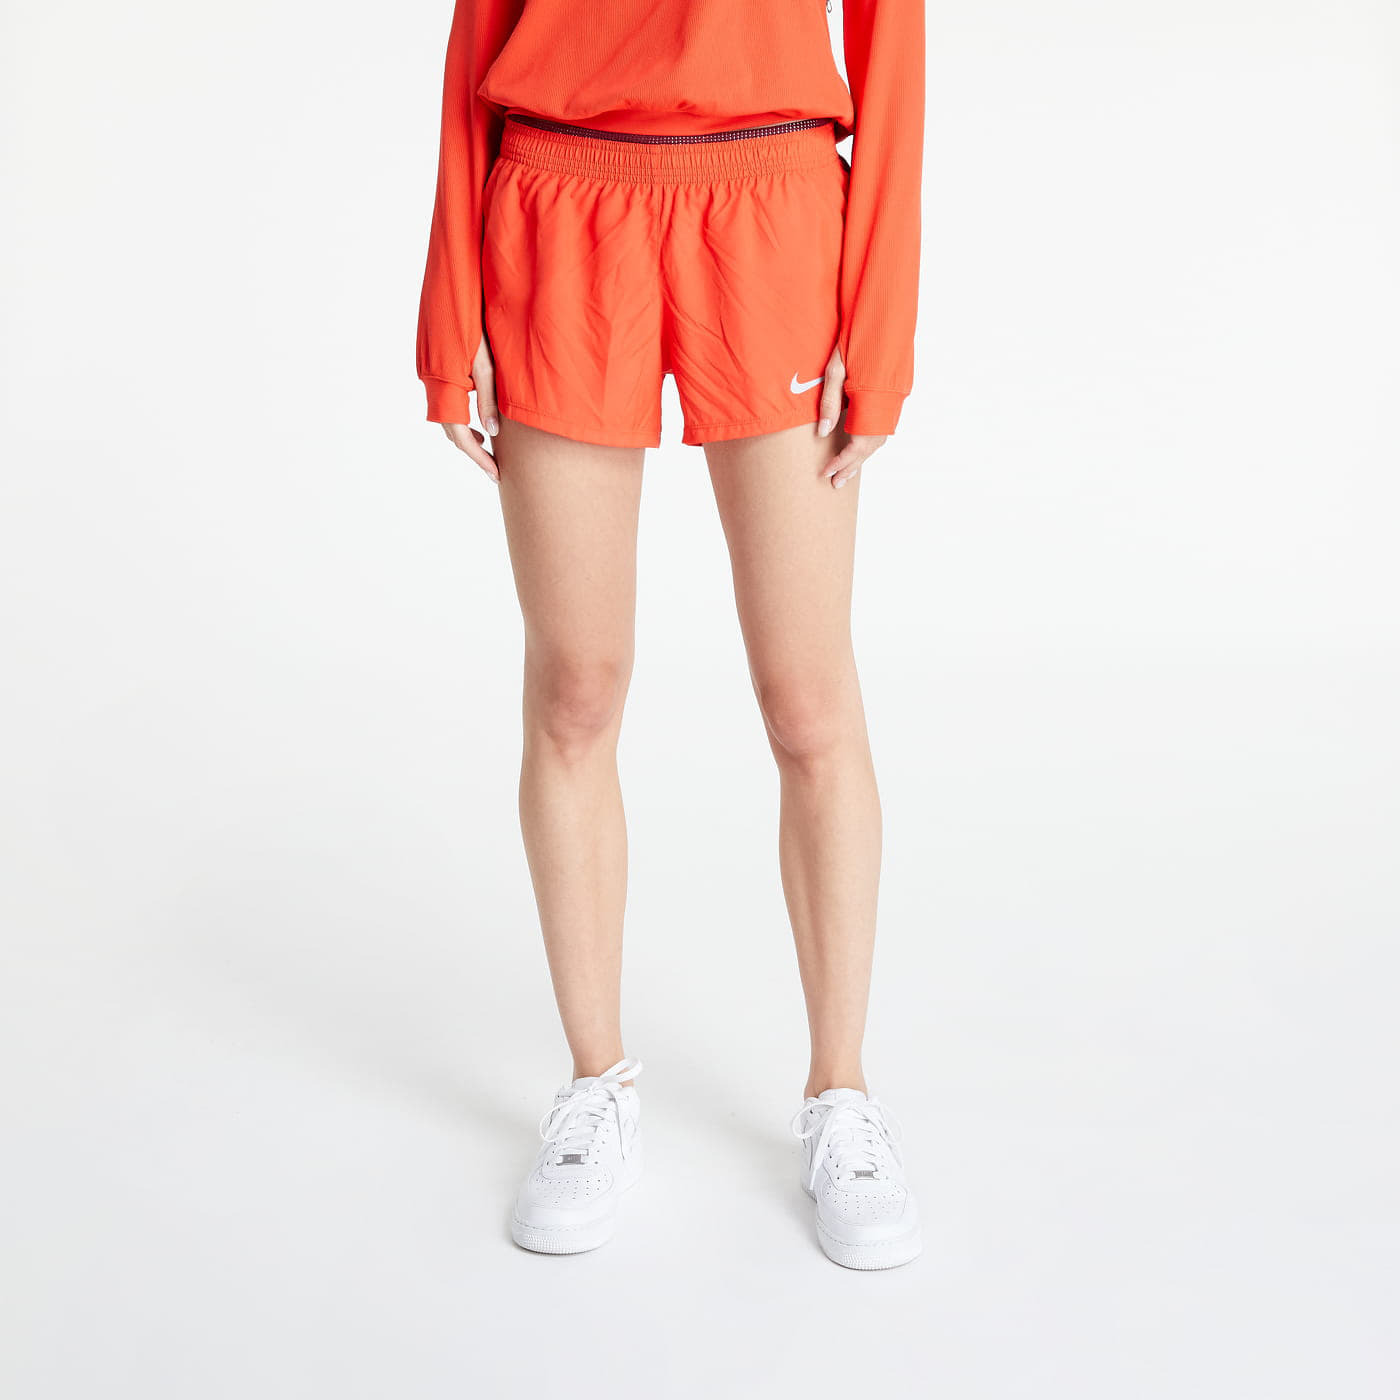 Nike - 10k shorts orange